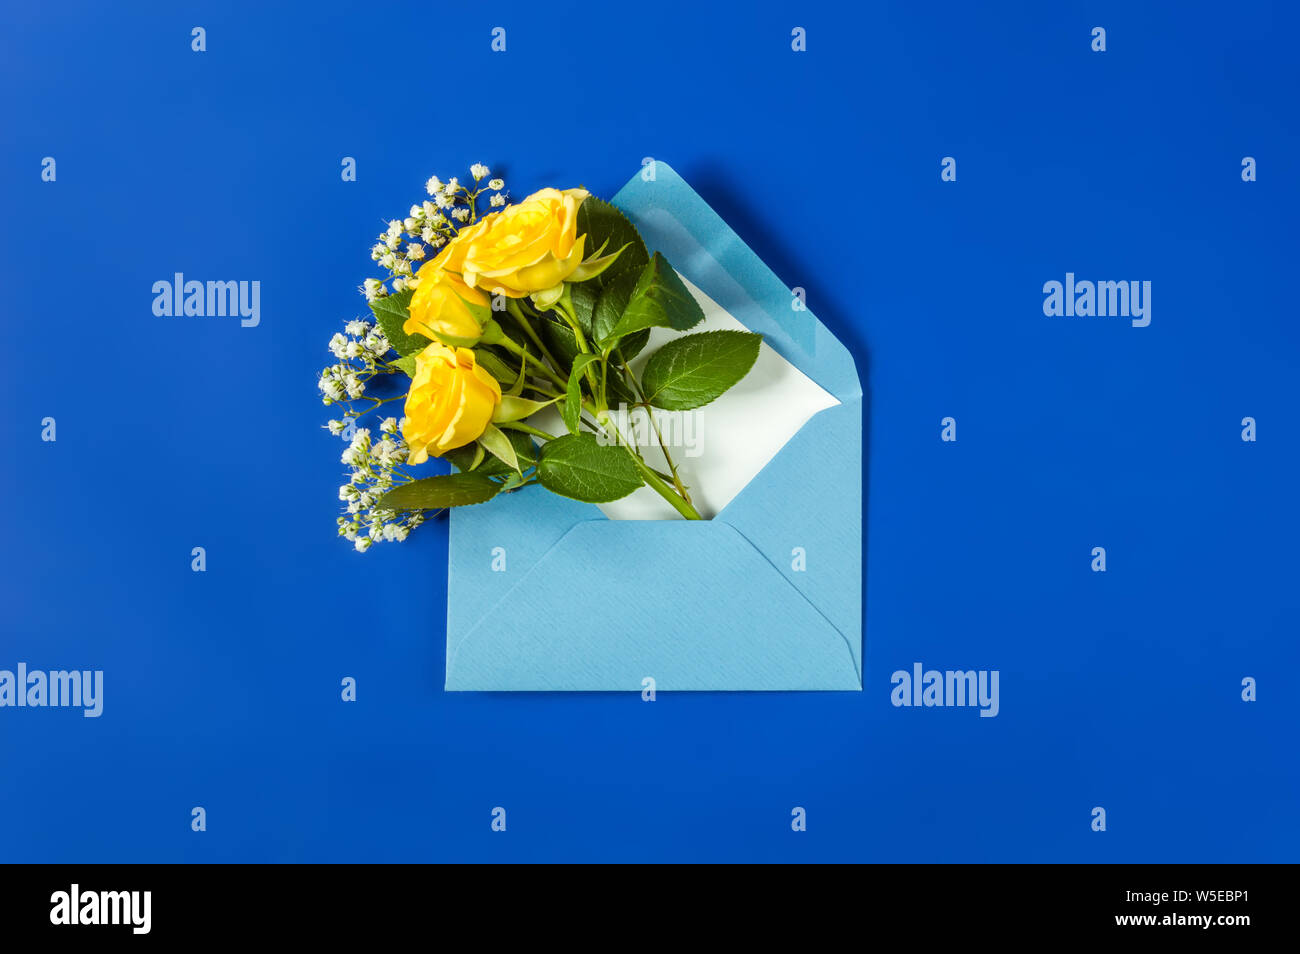 Gelbe Rosen und weißen Gypsophila im hellblauen Umschlag close-up auf blauem Hintergrund. Ansicht von oben, flach. Vorlage für die Grußkarte. Festliche Blumen b Stockfoto